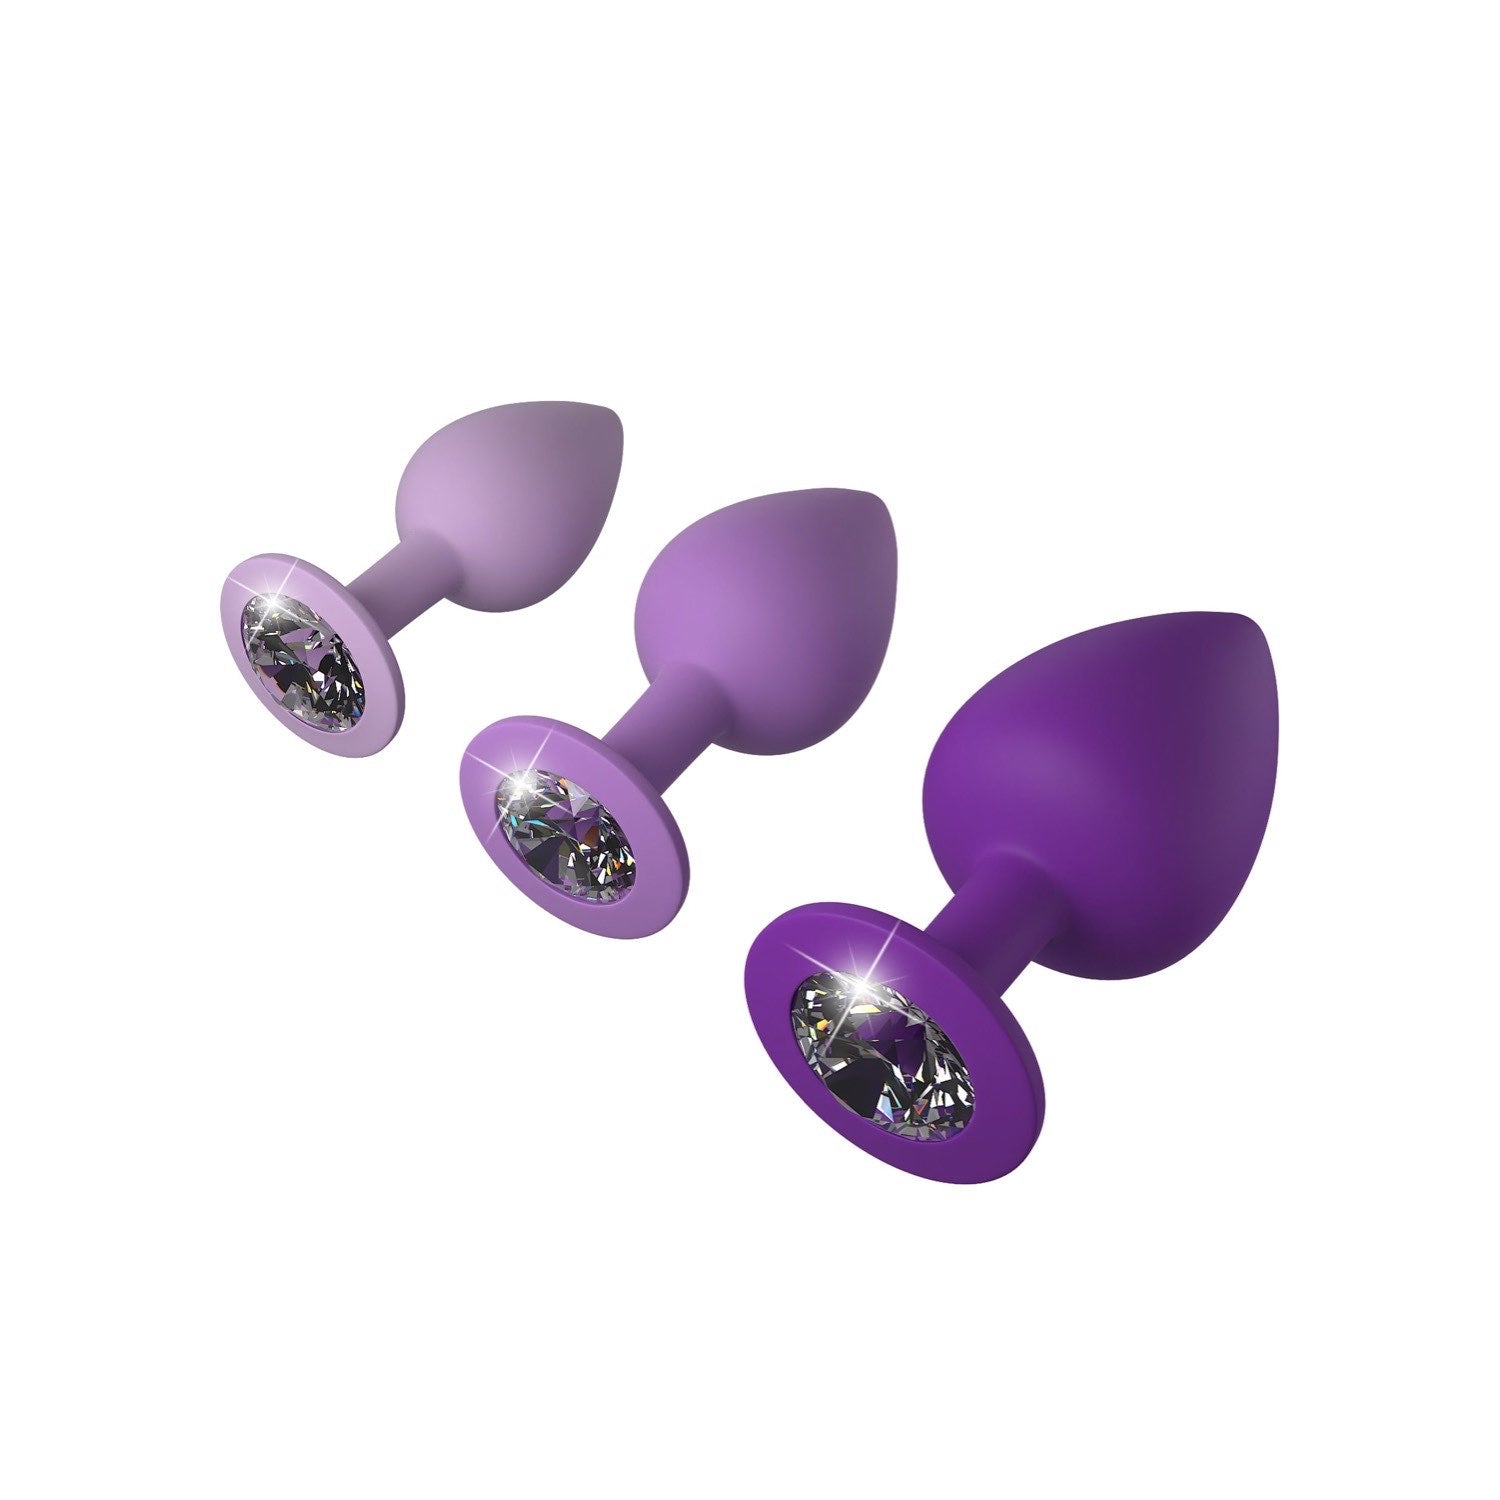 为她幻想 Little Gems 训练器套装 - 带宝石底座的紫色屁股塞 - 3 种尺寸套装 by Pipedream